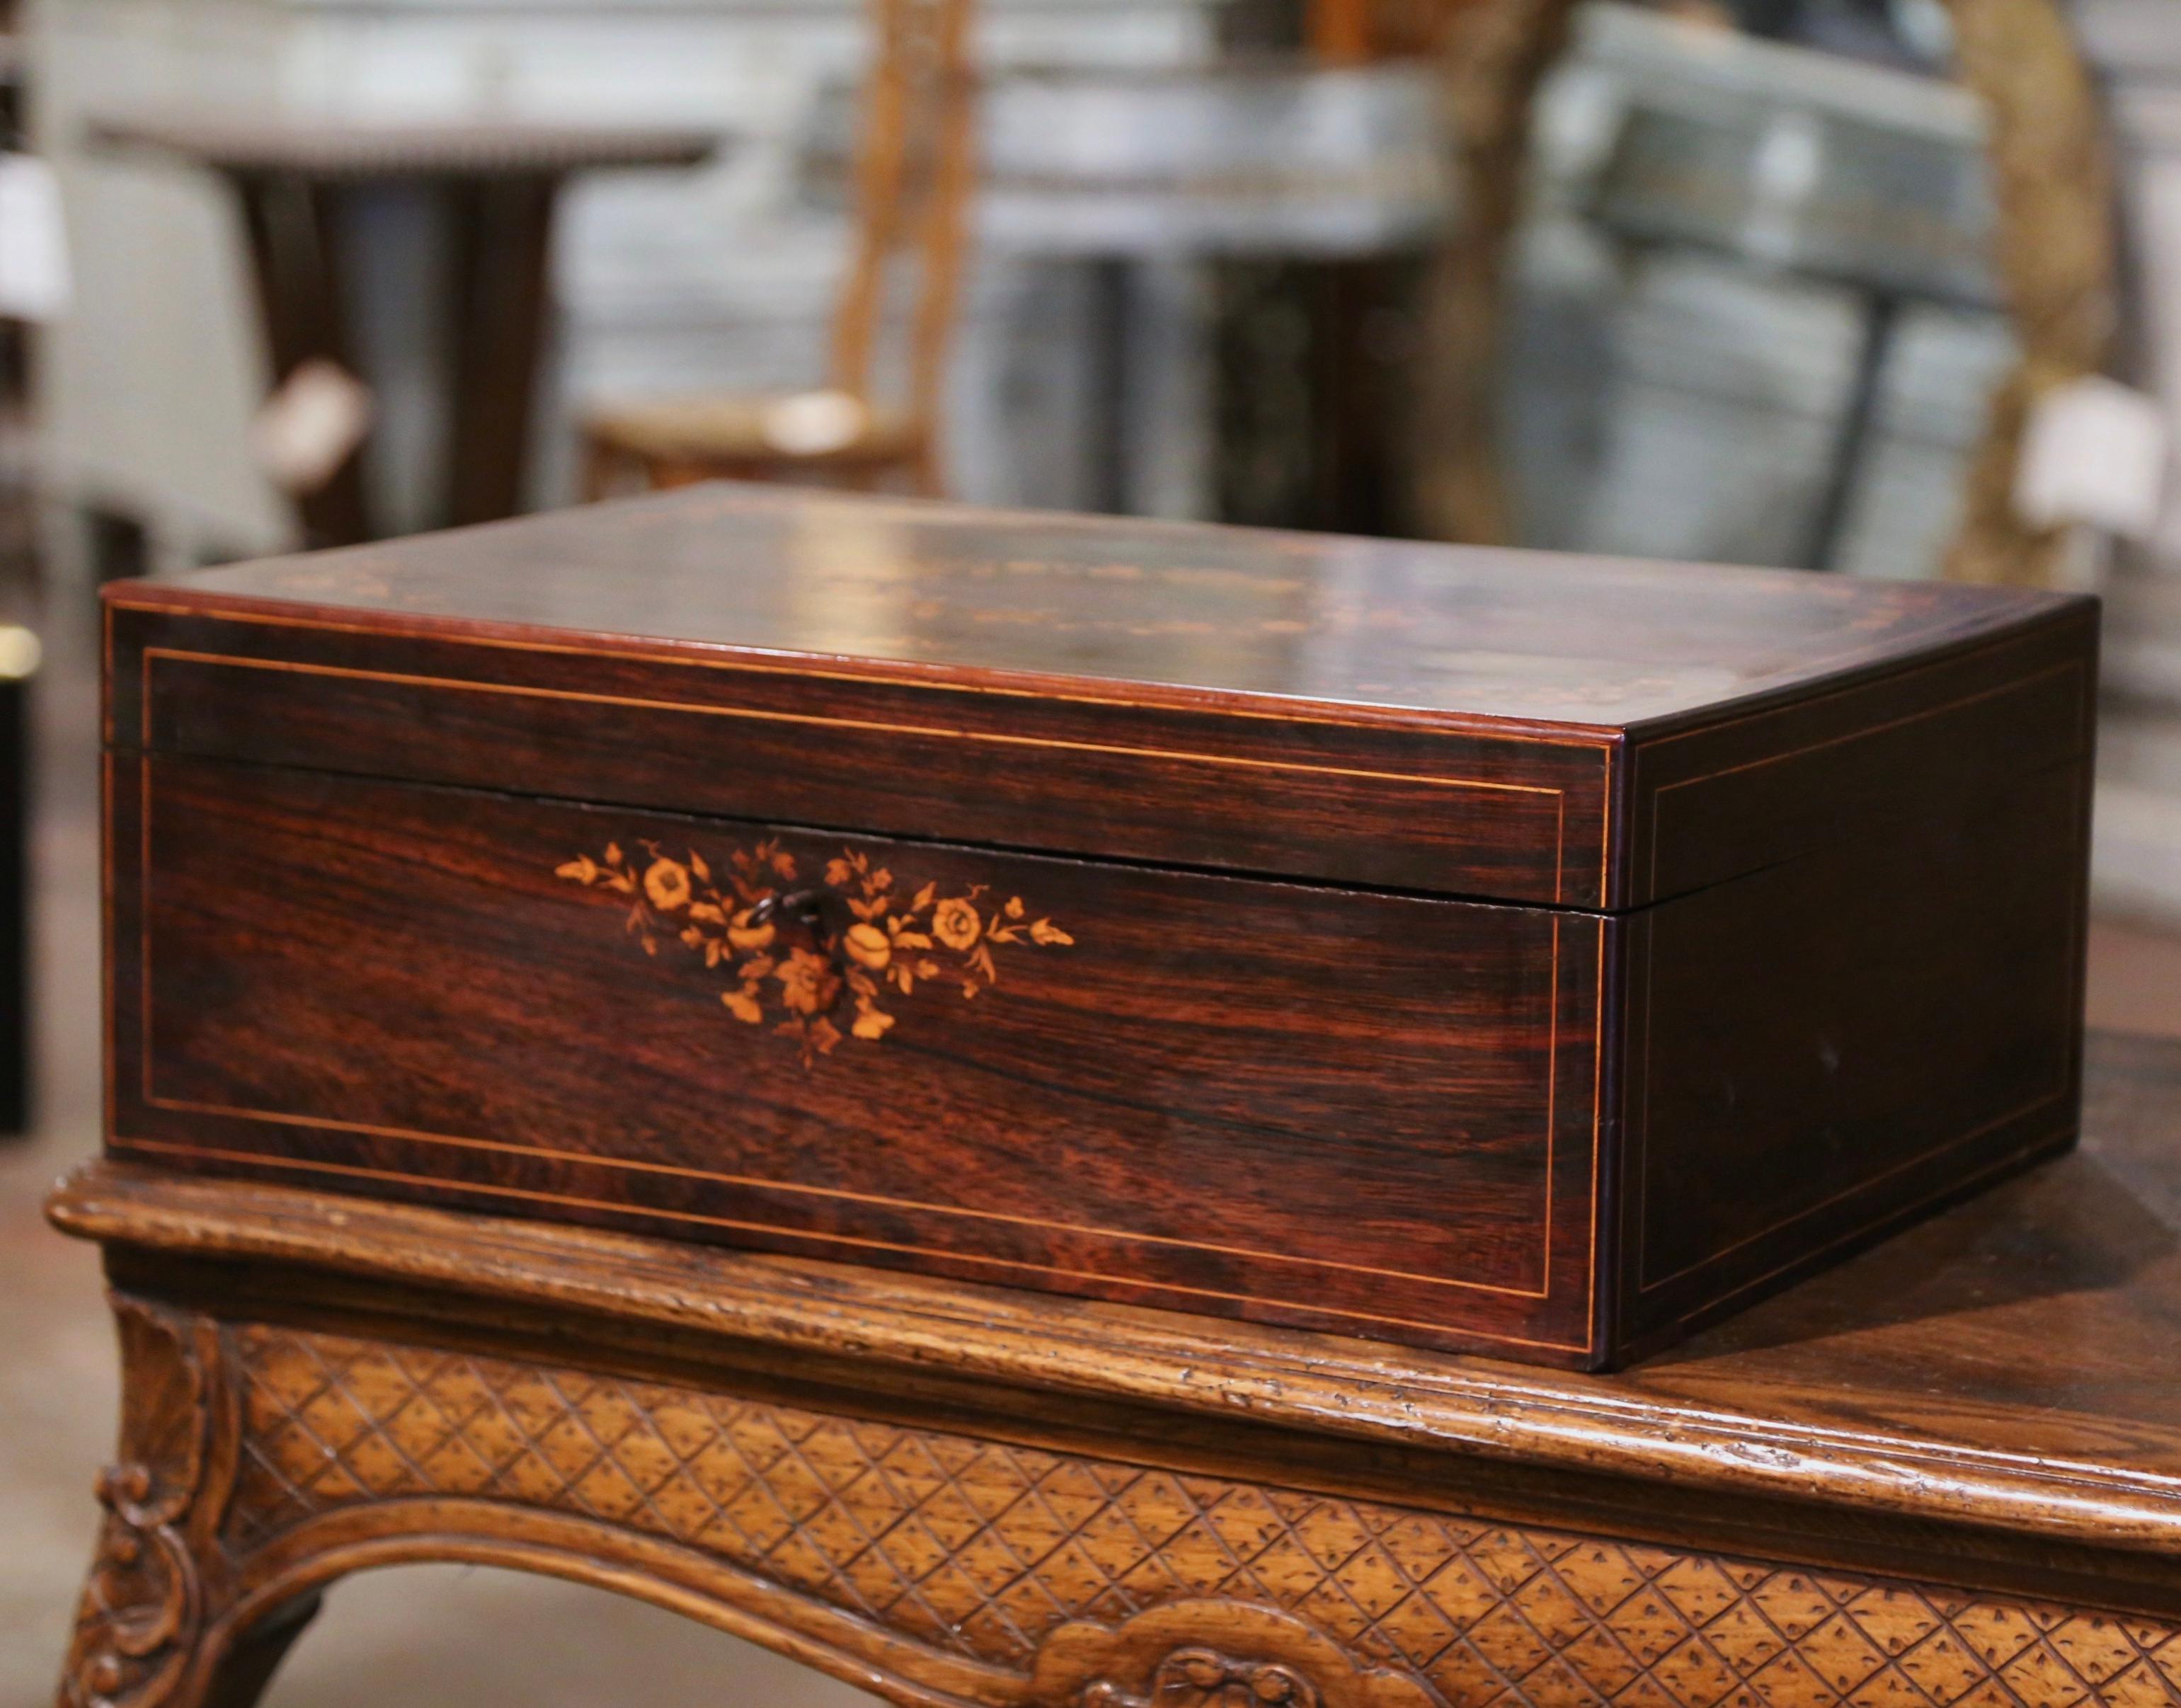 Décorez une table basse ou une étagère avec cette élégante boîte ancienne. Créé en France vers 1880, ce cabinet rectangulaire est décoré d'élégantes incrustations florales dans chaque coin et agrémenté d'un médaillon central de feuillage. En ouvrant